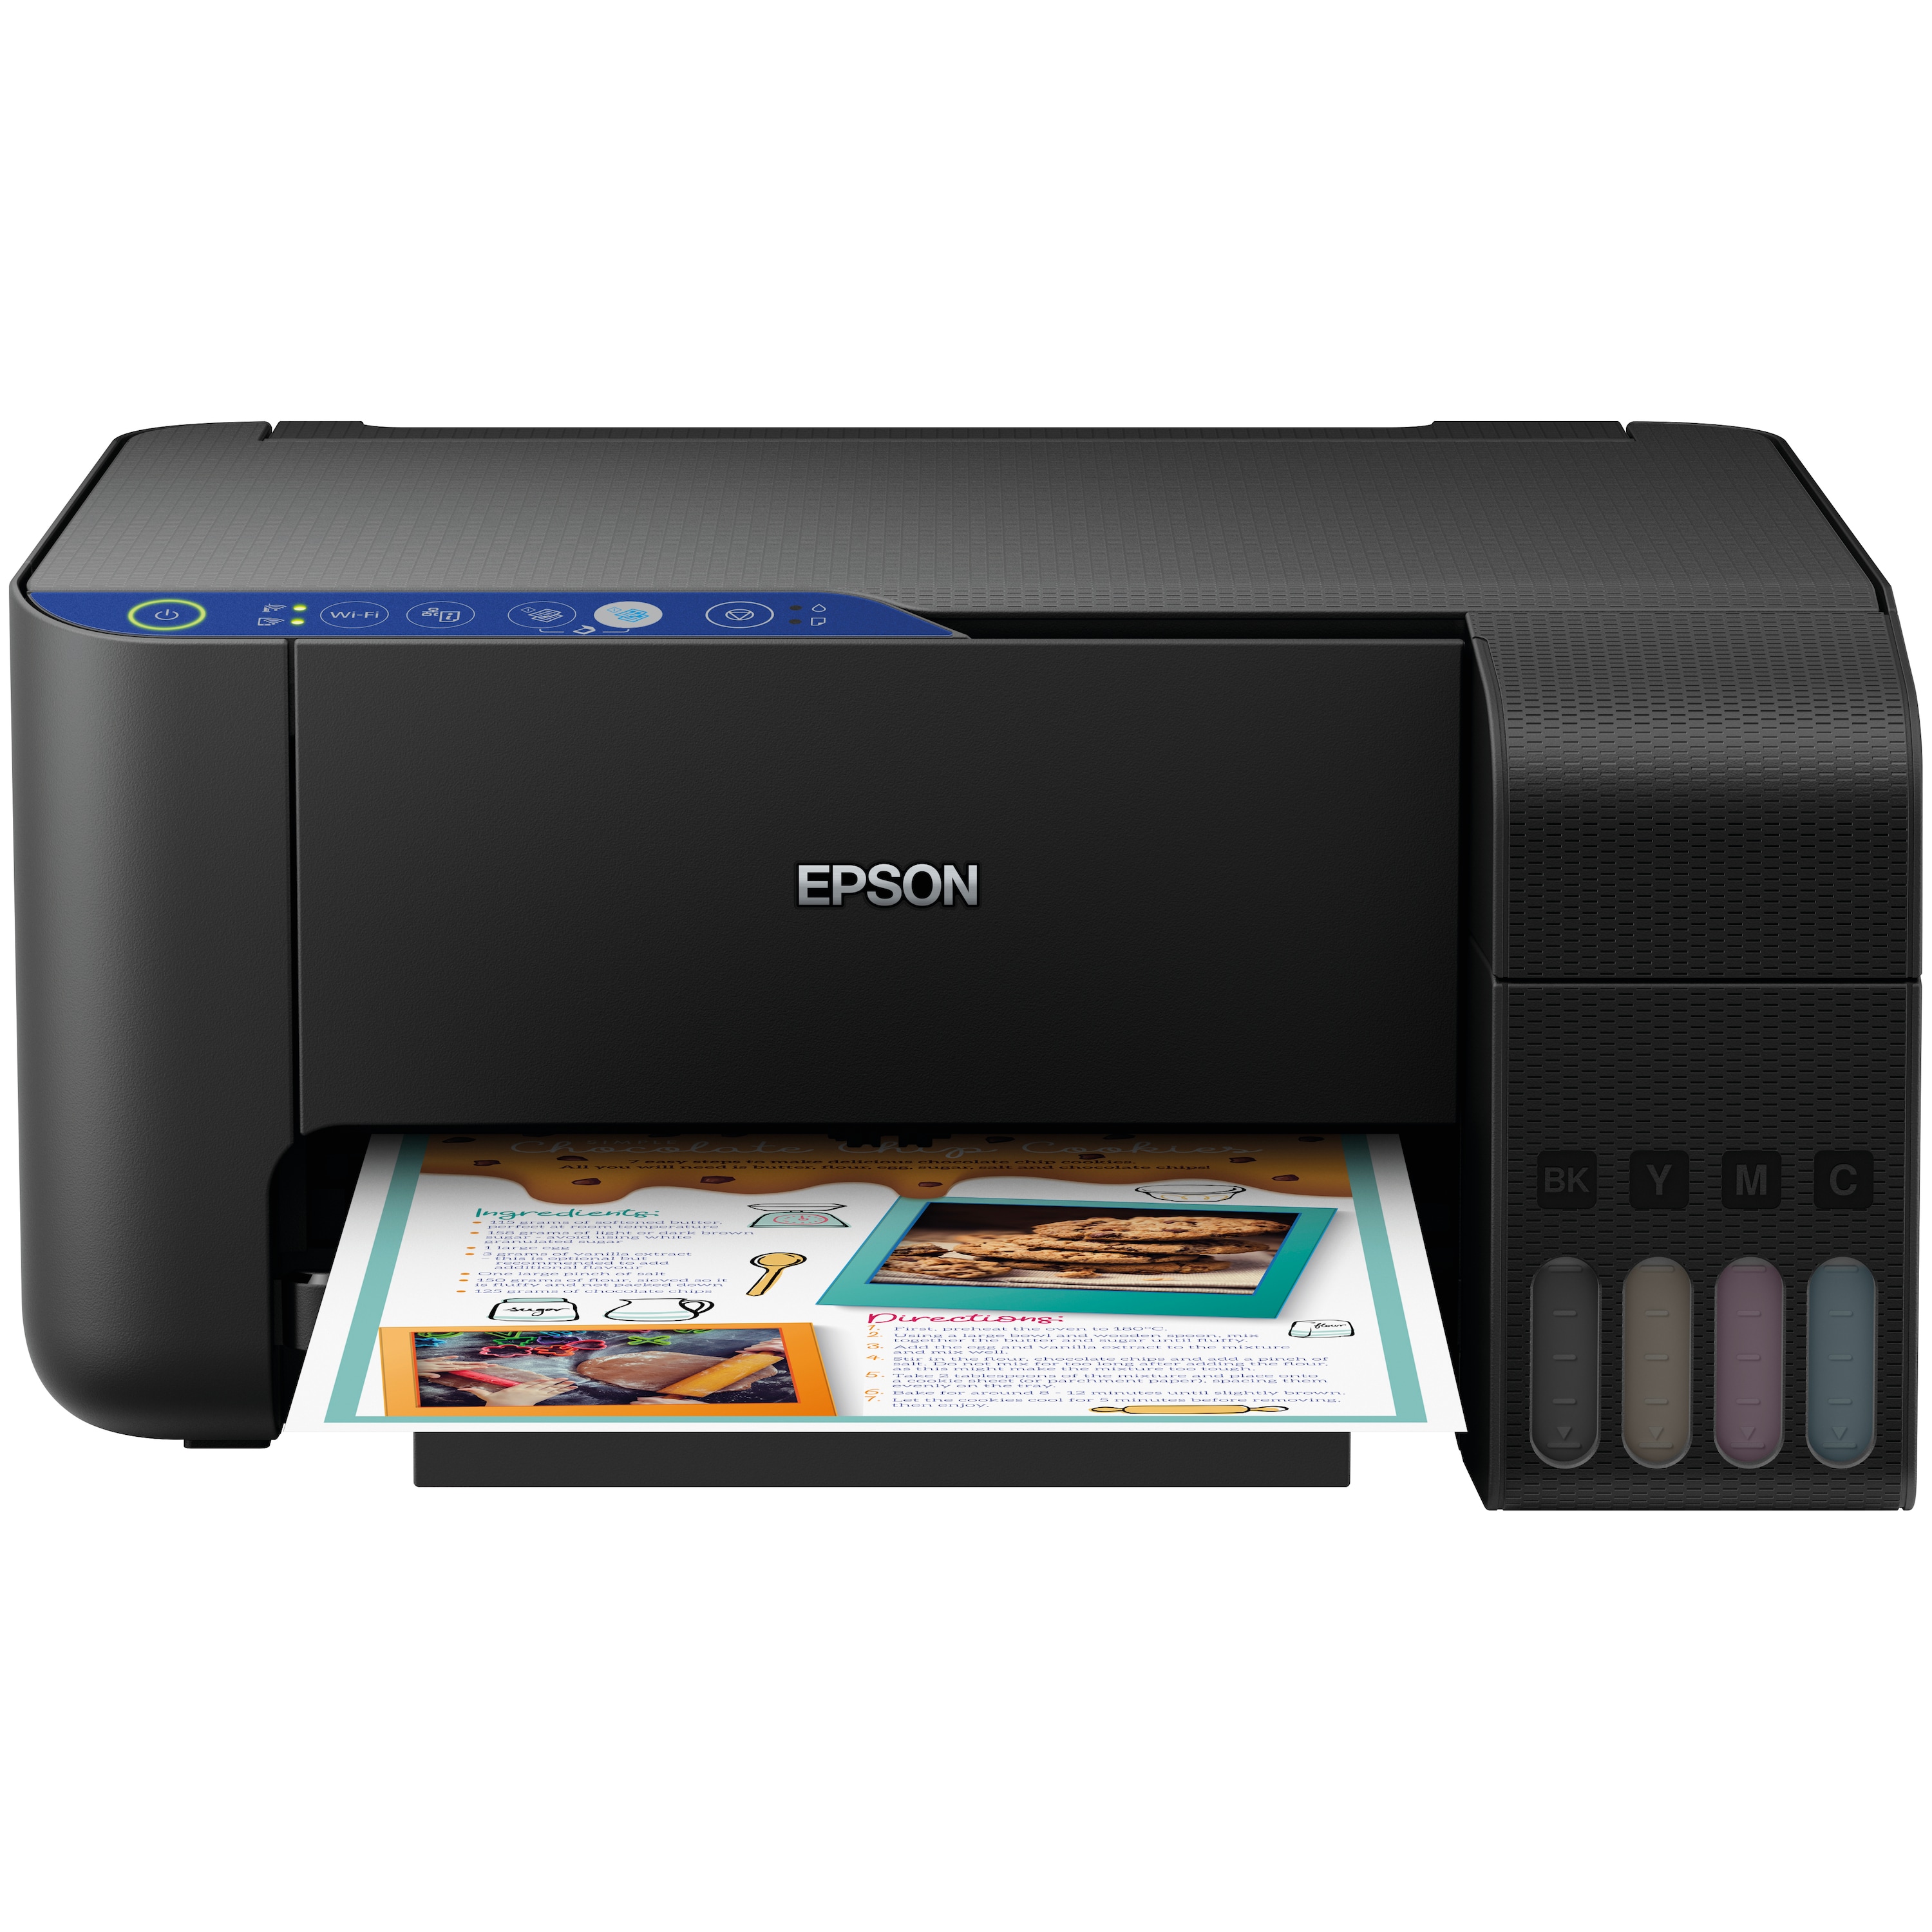 EPSON EcoTank ET-2711 WLAN Drucker, Multifunktionsgerät, Drucken, Kopieren, Scannen, WiFi, USB 2.0, großer Tintentank, hohe Reichweite